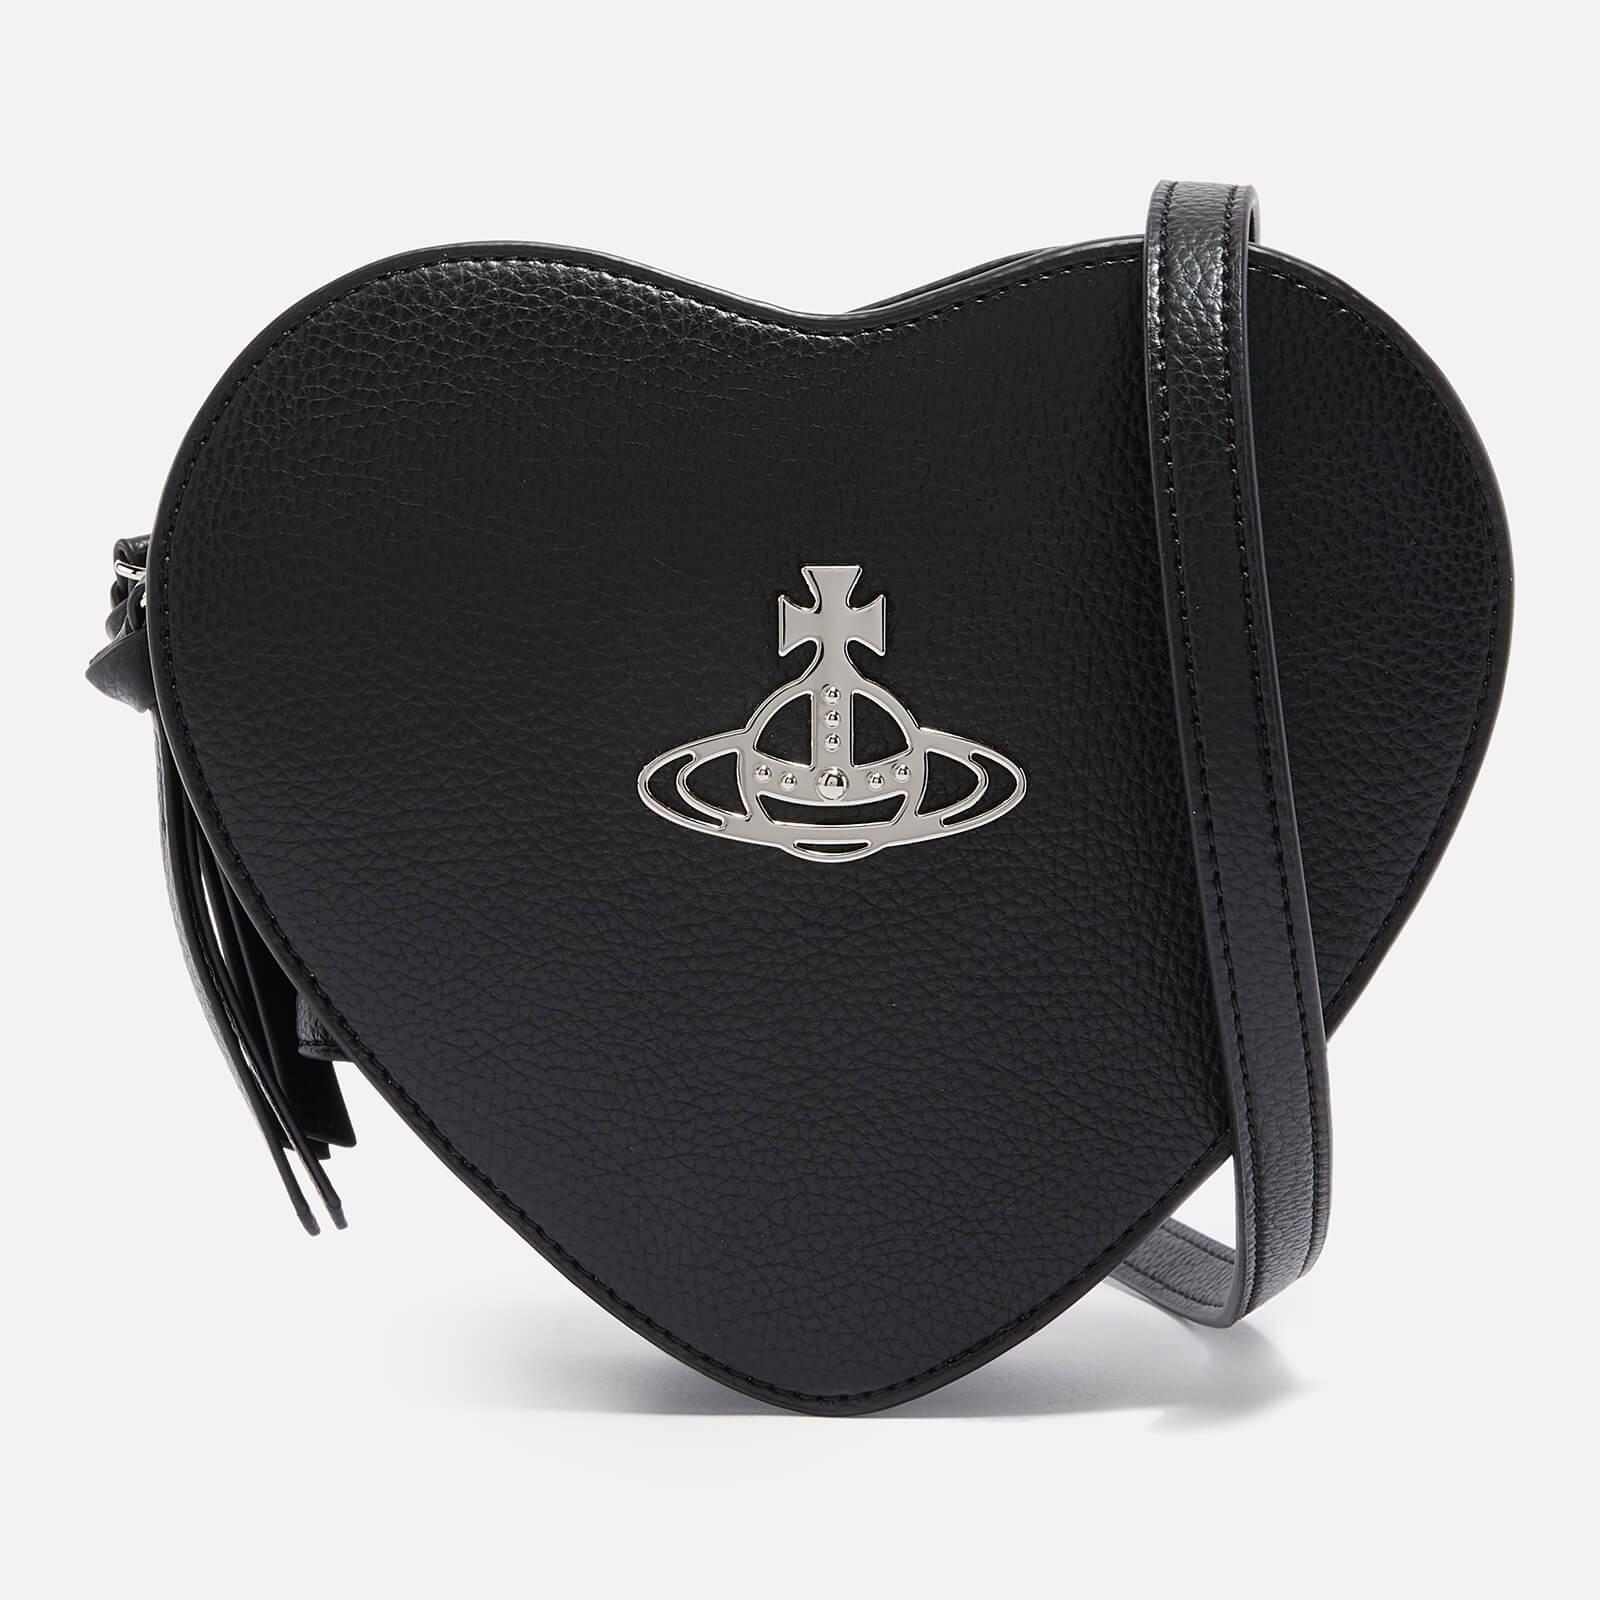 Vivienne Westwood Louise Vegan Leather Cross-body Bag in Black | Lyst UK